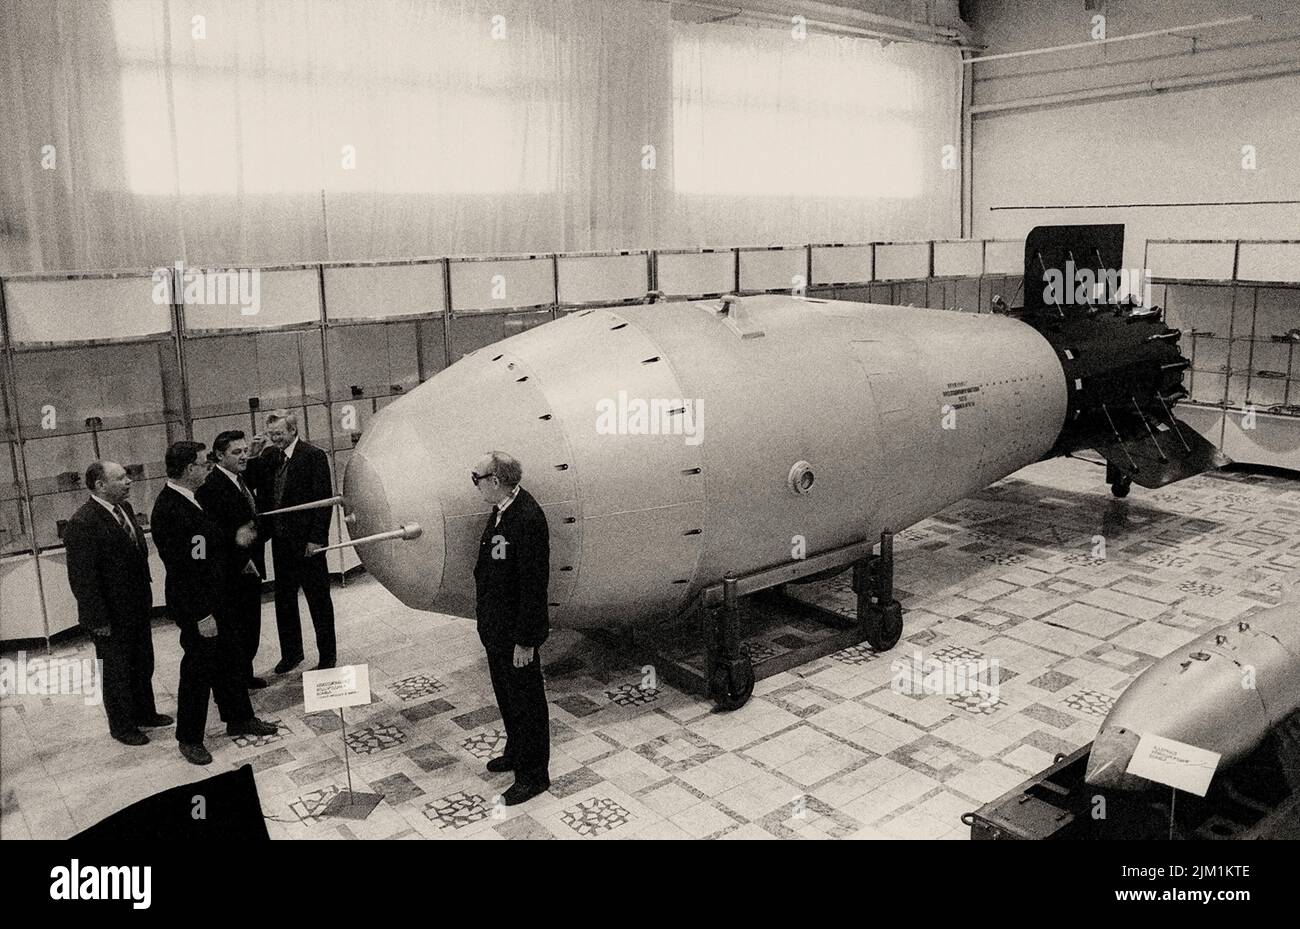 Водородная бомба ученый. Ан602 термоядерная бомба — «царь-бомба» (58,6 мегатонн). Водородная бомба Сахарова 1953. Царь бомба 100 мегатонн.